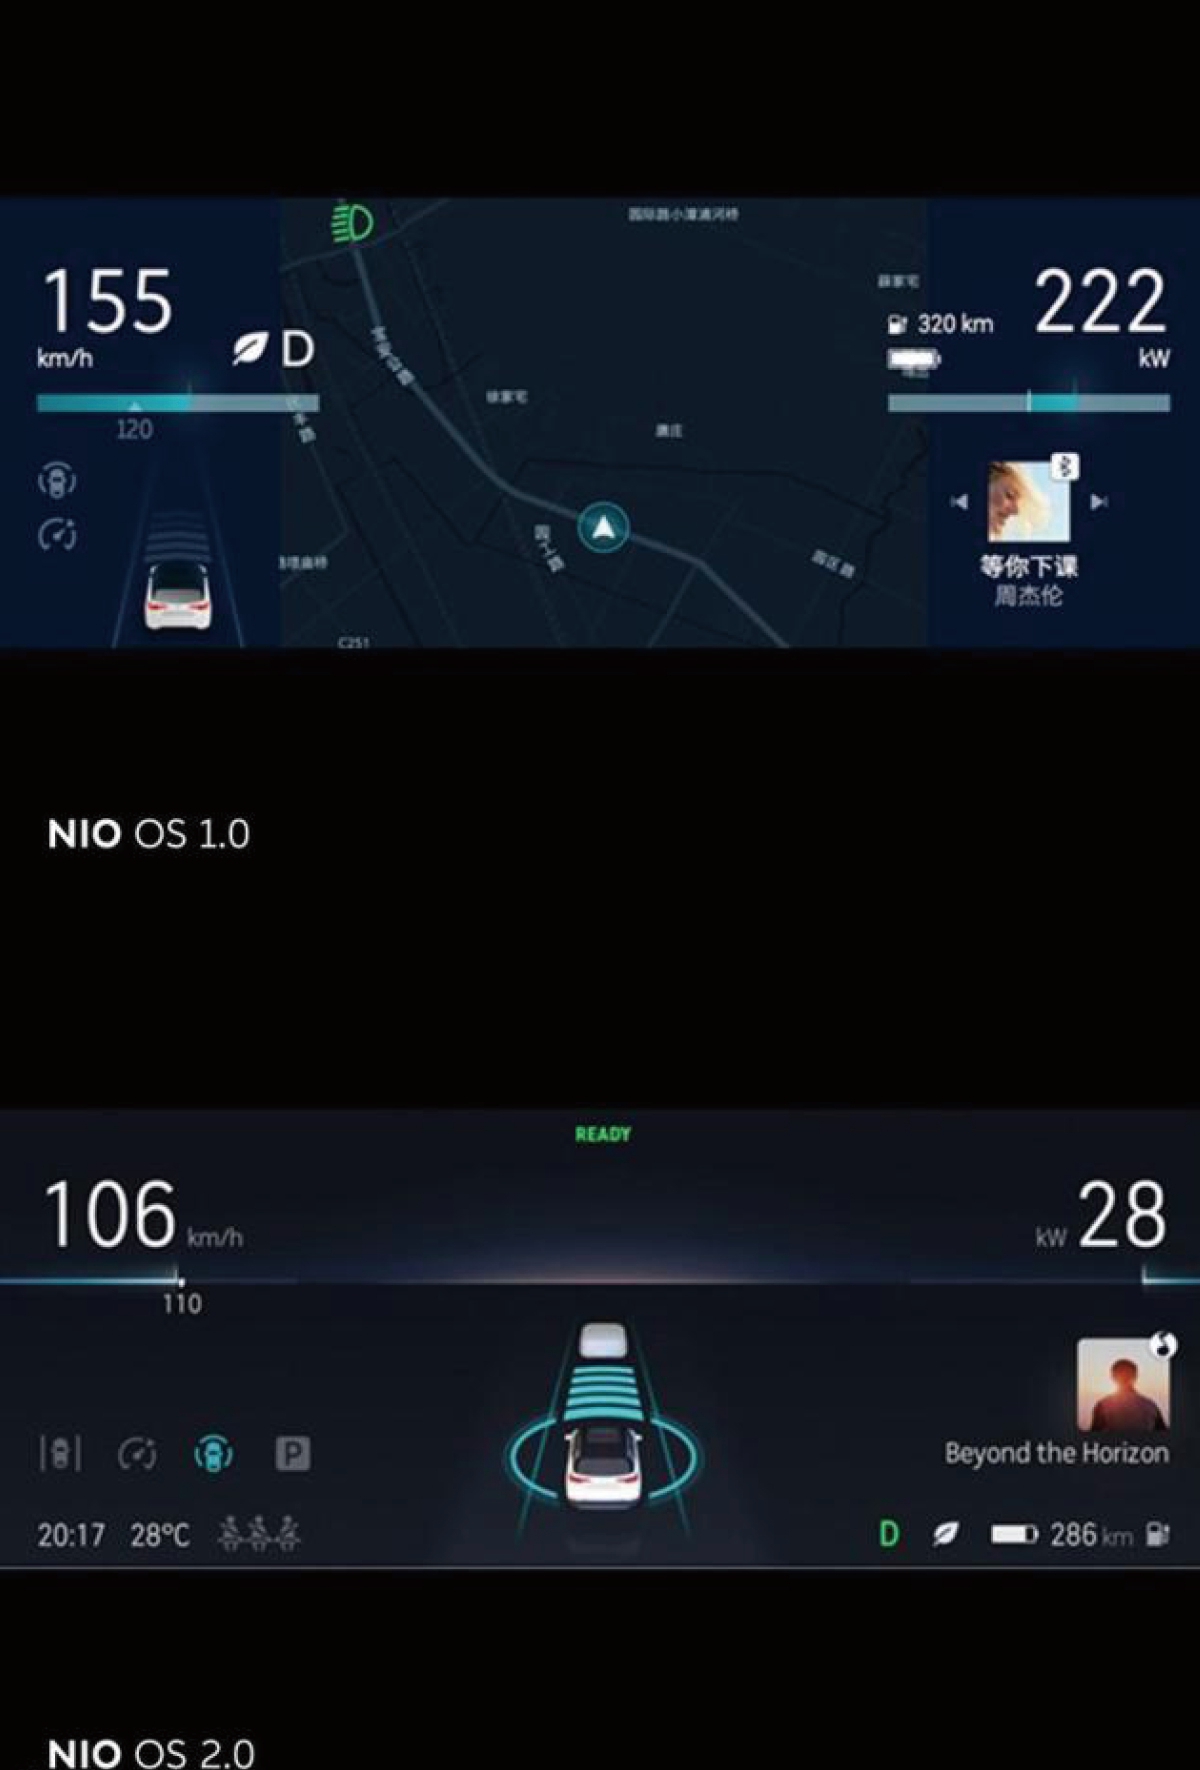 释放新功能 体验NIO Pilot自动辅助驾驶系统